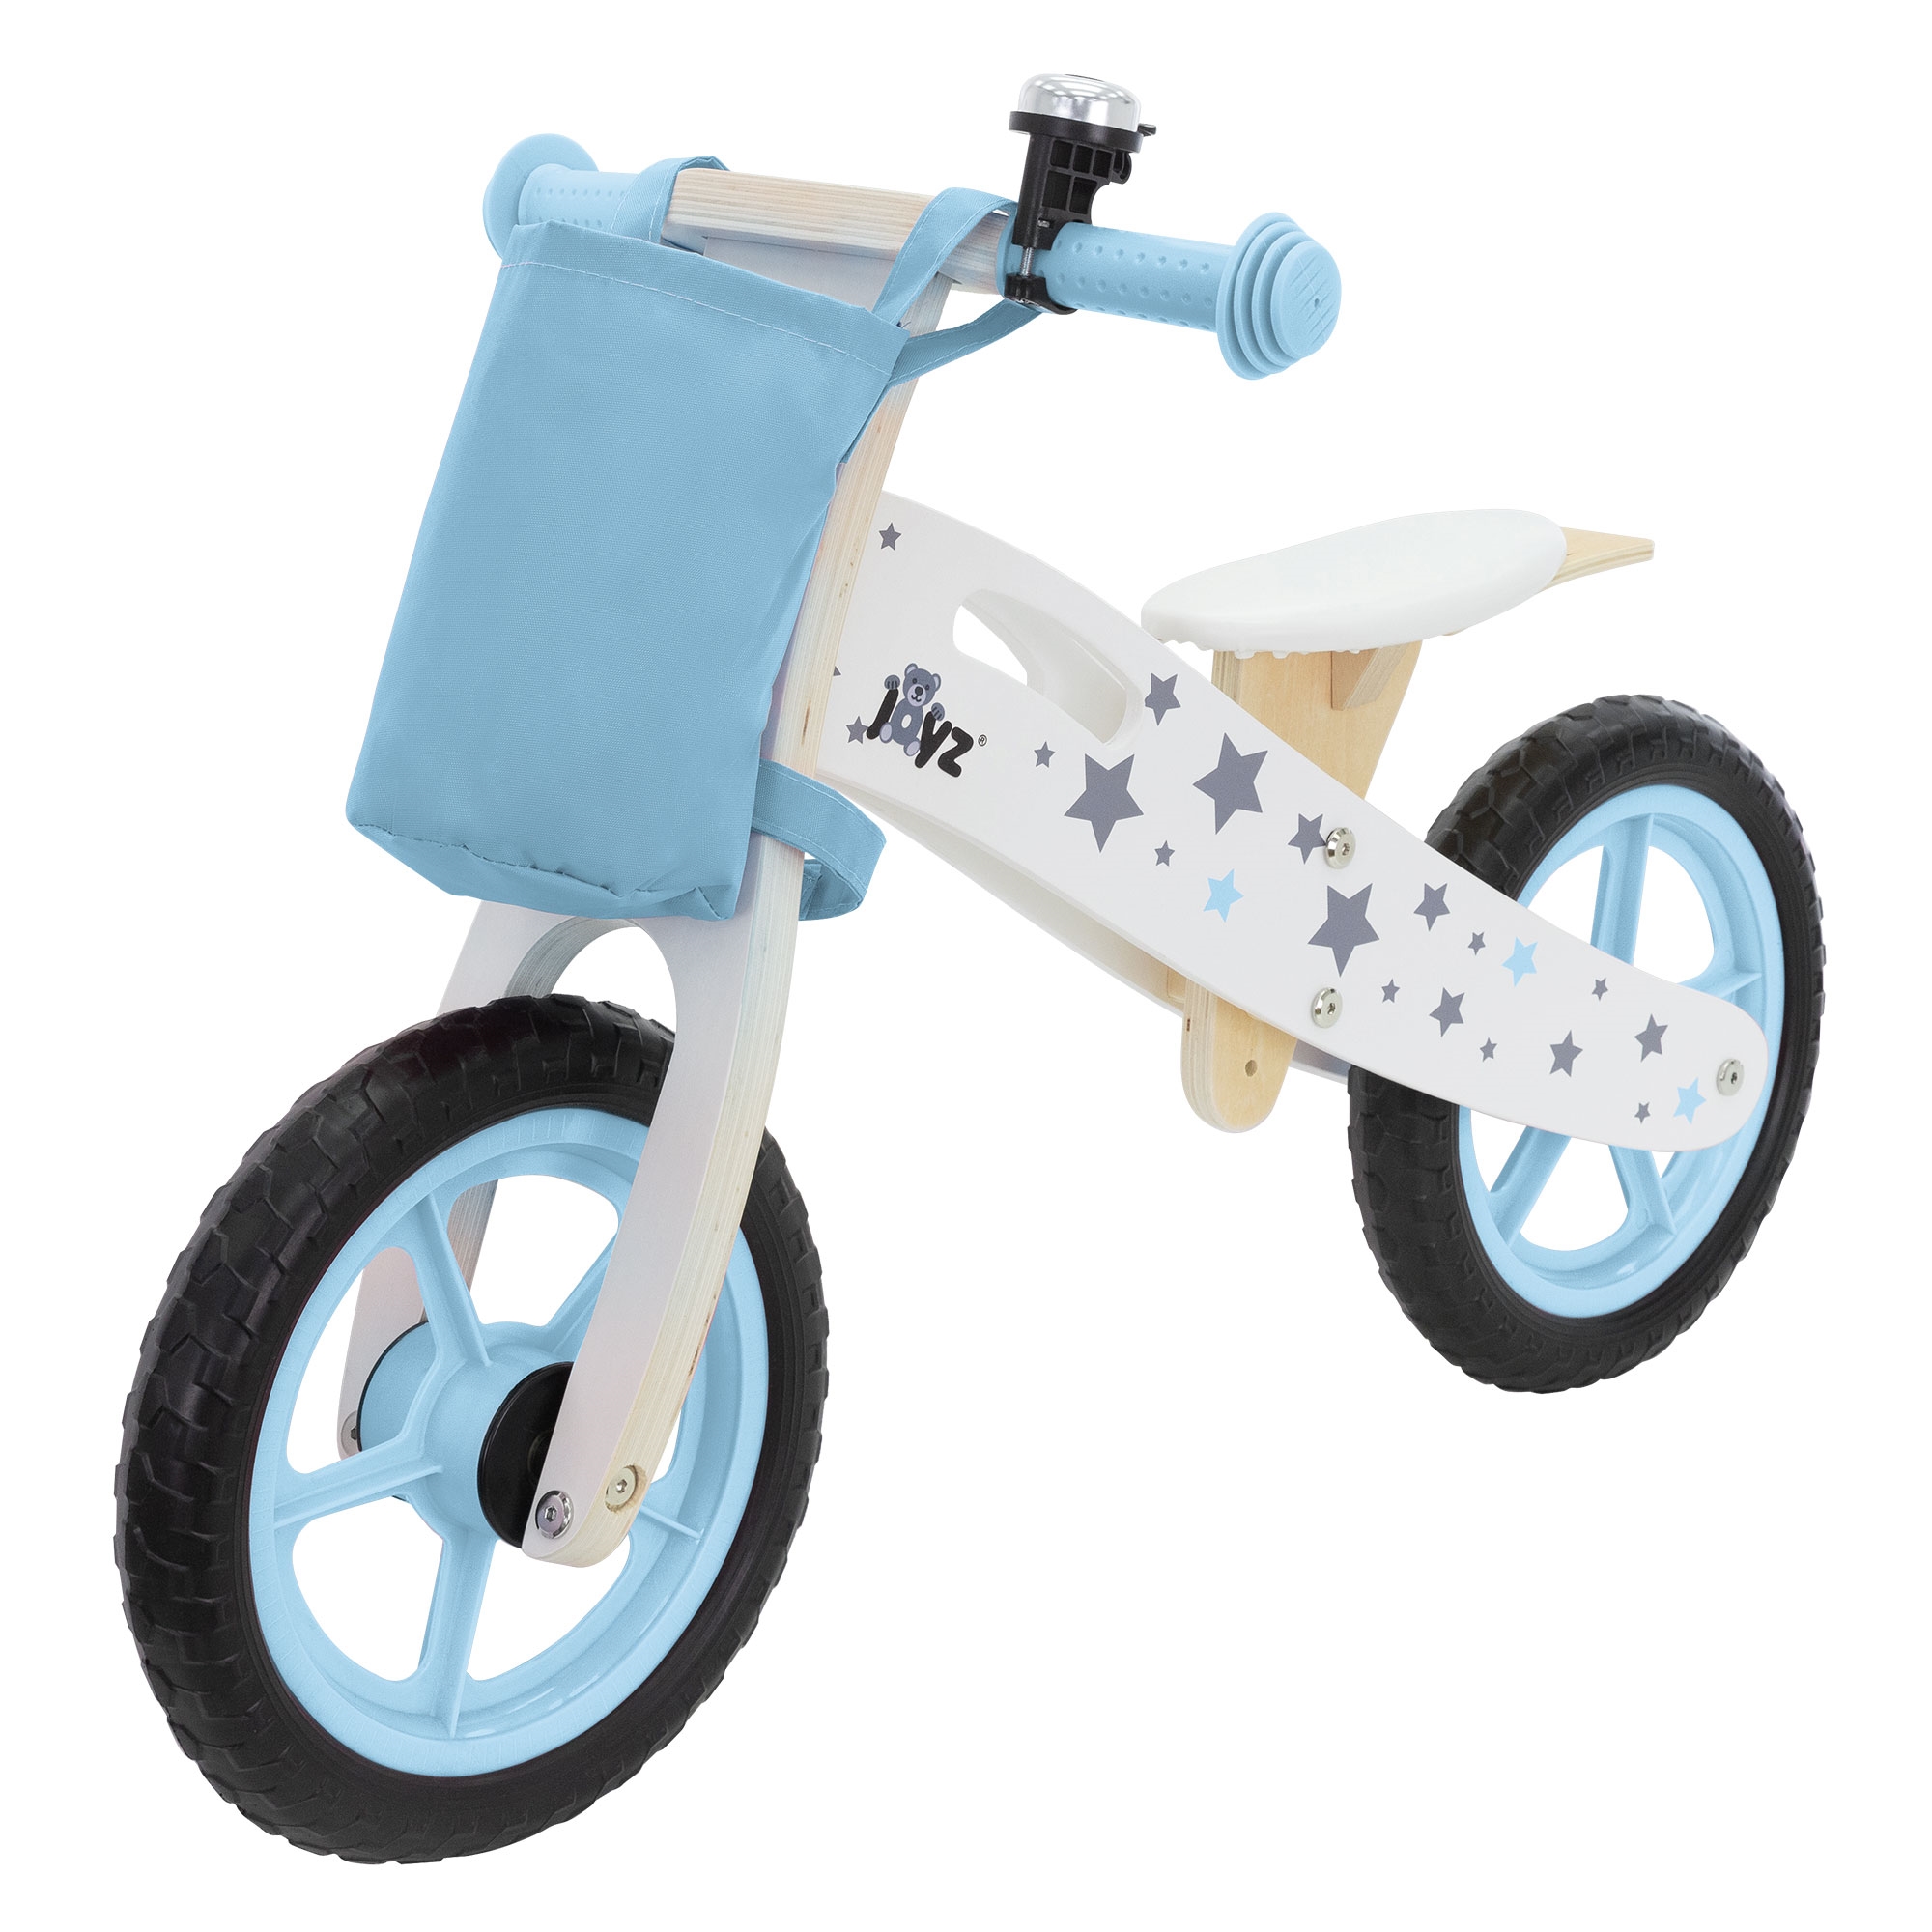 Bicicleta De Madera Joyz Para Niños A Partir De 2 Años Con Asiento Ajustable - azul - 